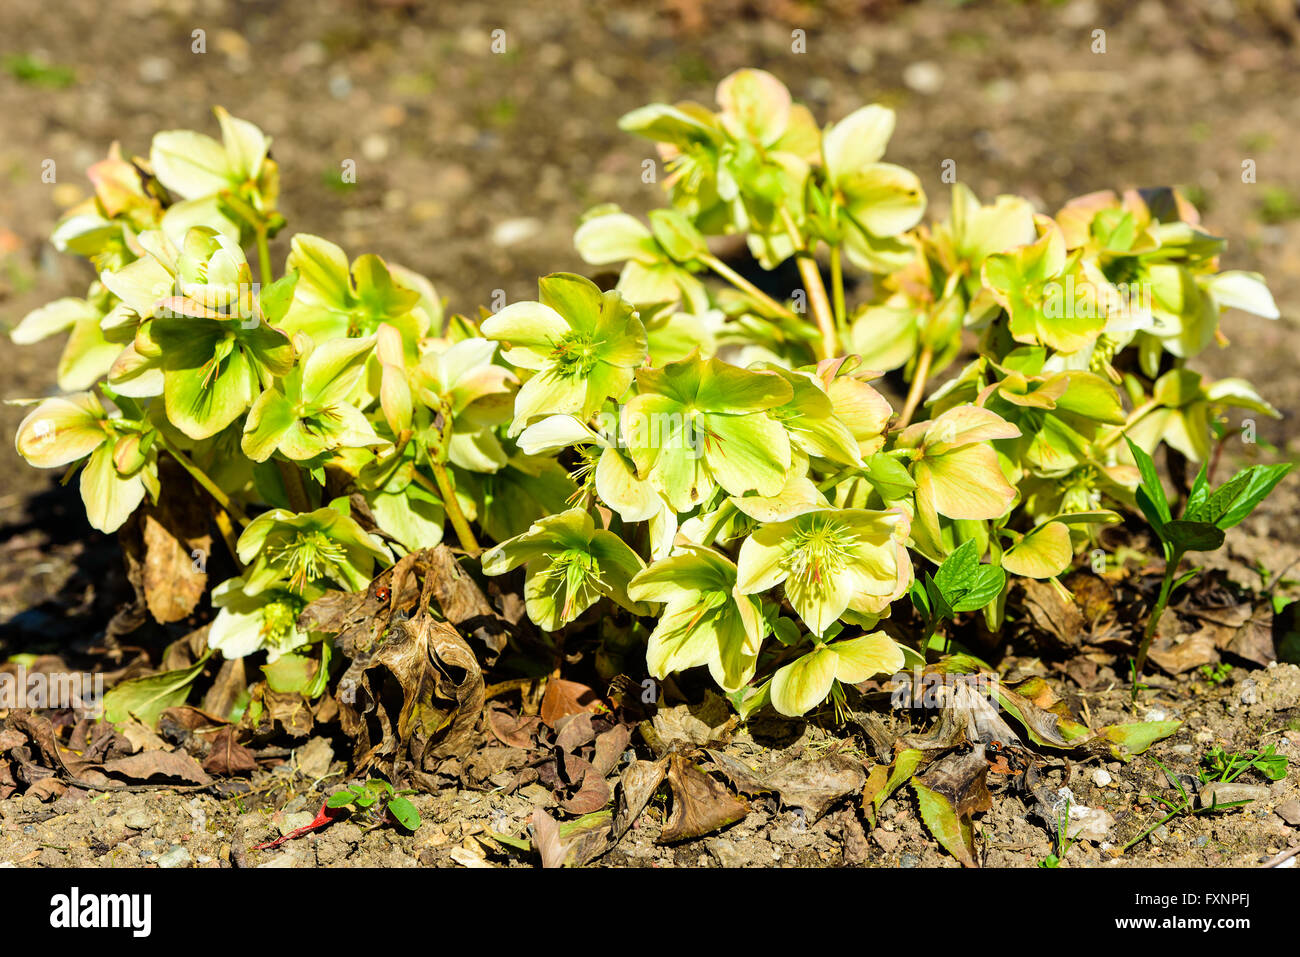 Helleborus niger, la rosa di Natale o il veratro nero, qui visto in primavera in piena fioritura. I fiori sono di colore verde e giallo. Foto Stock